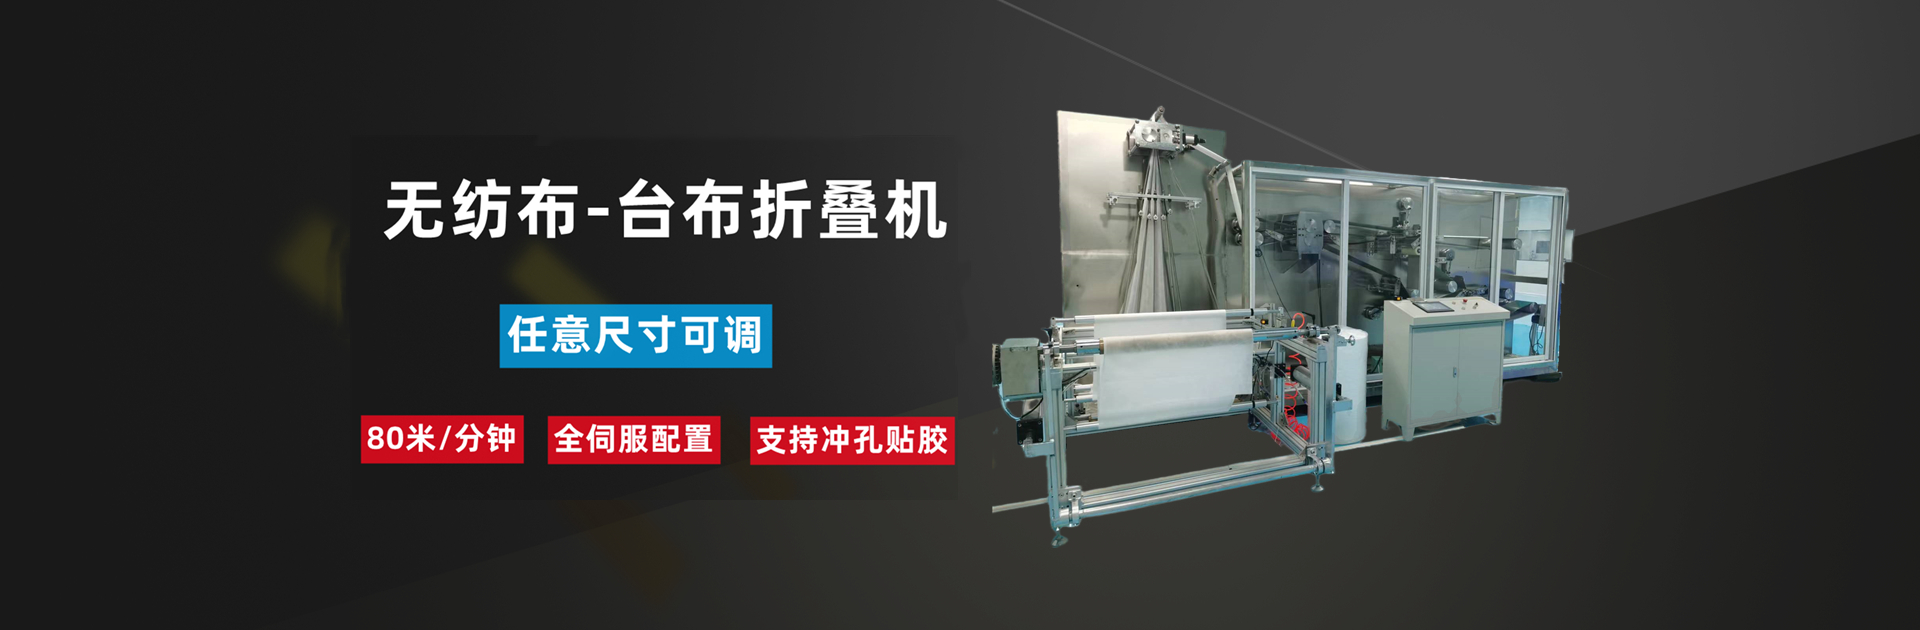 连云港市喜玩兔机械有限公司-10年专注研发生产